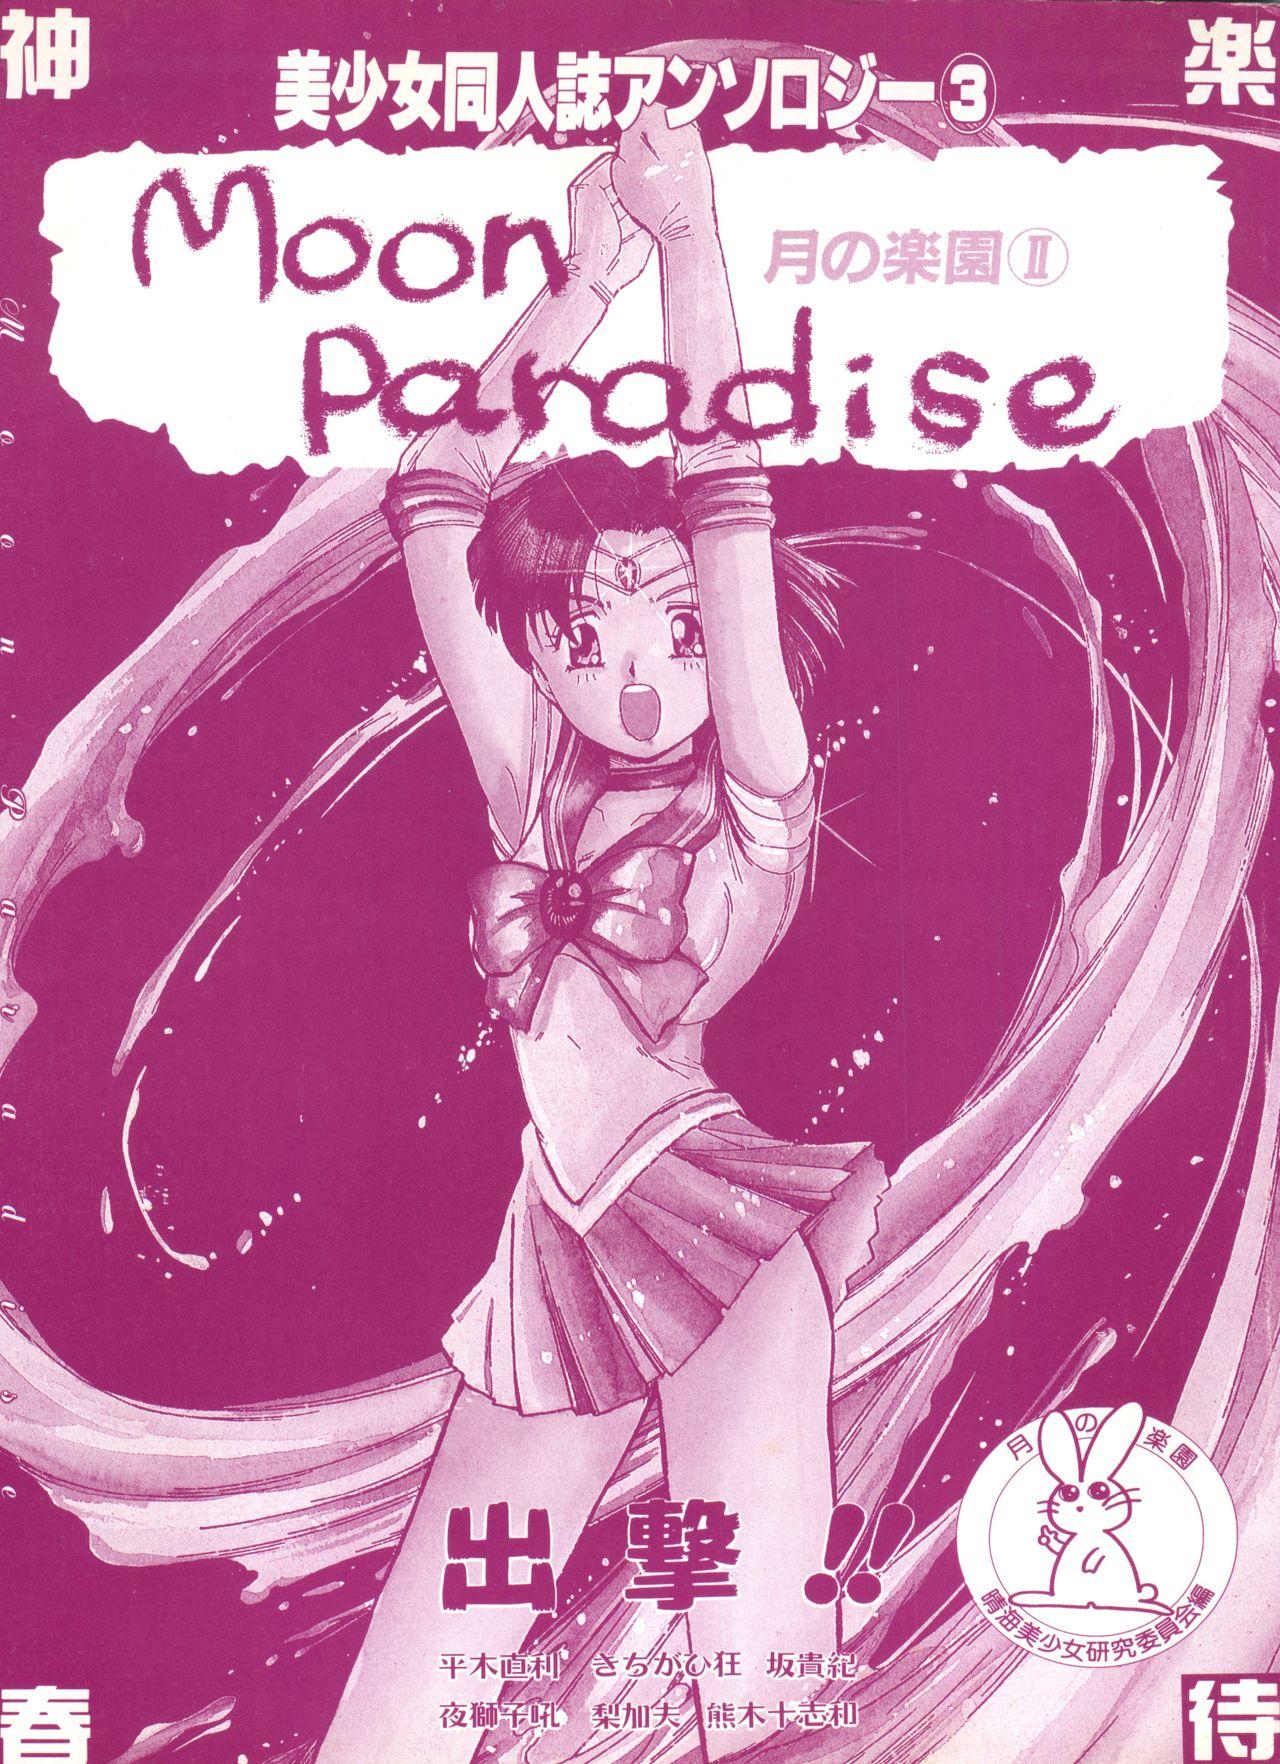 Bishoujo Doujinshi Anthology 3 - Moon Paradise 2 Tsuki no Rakuen 3